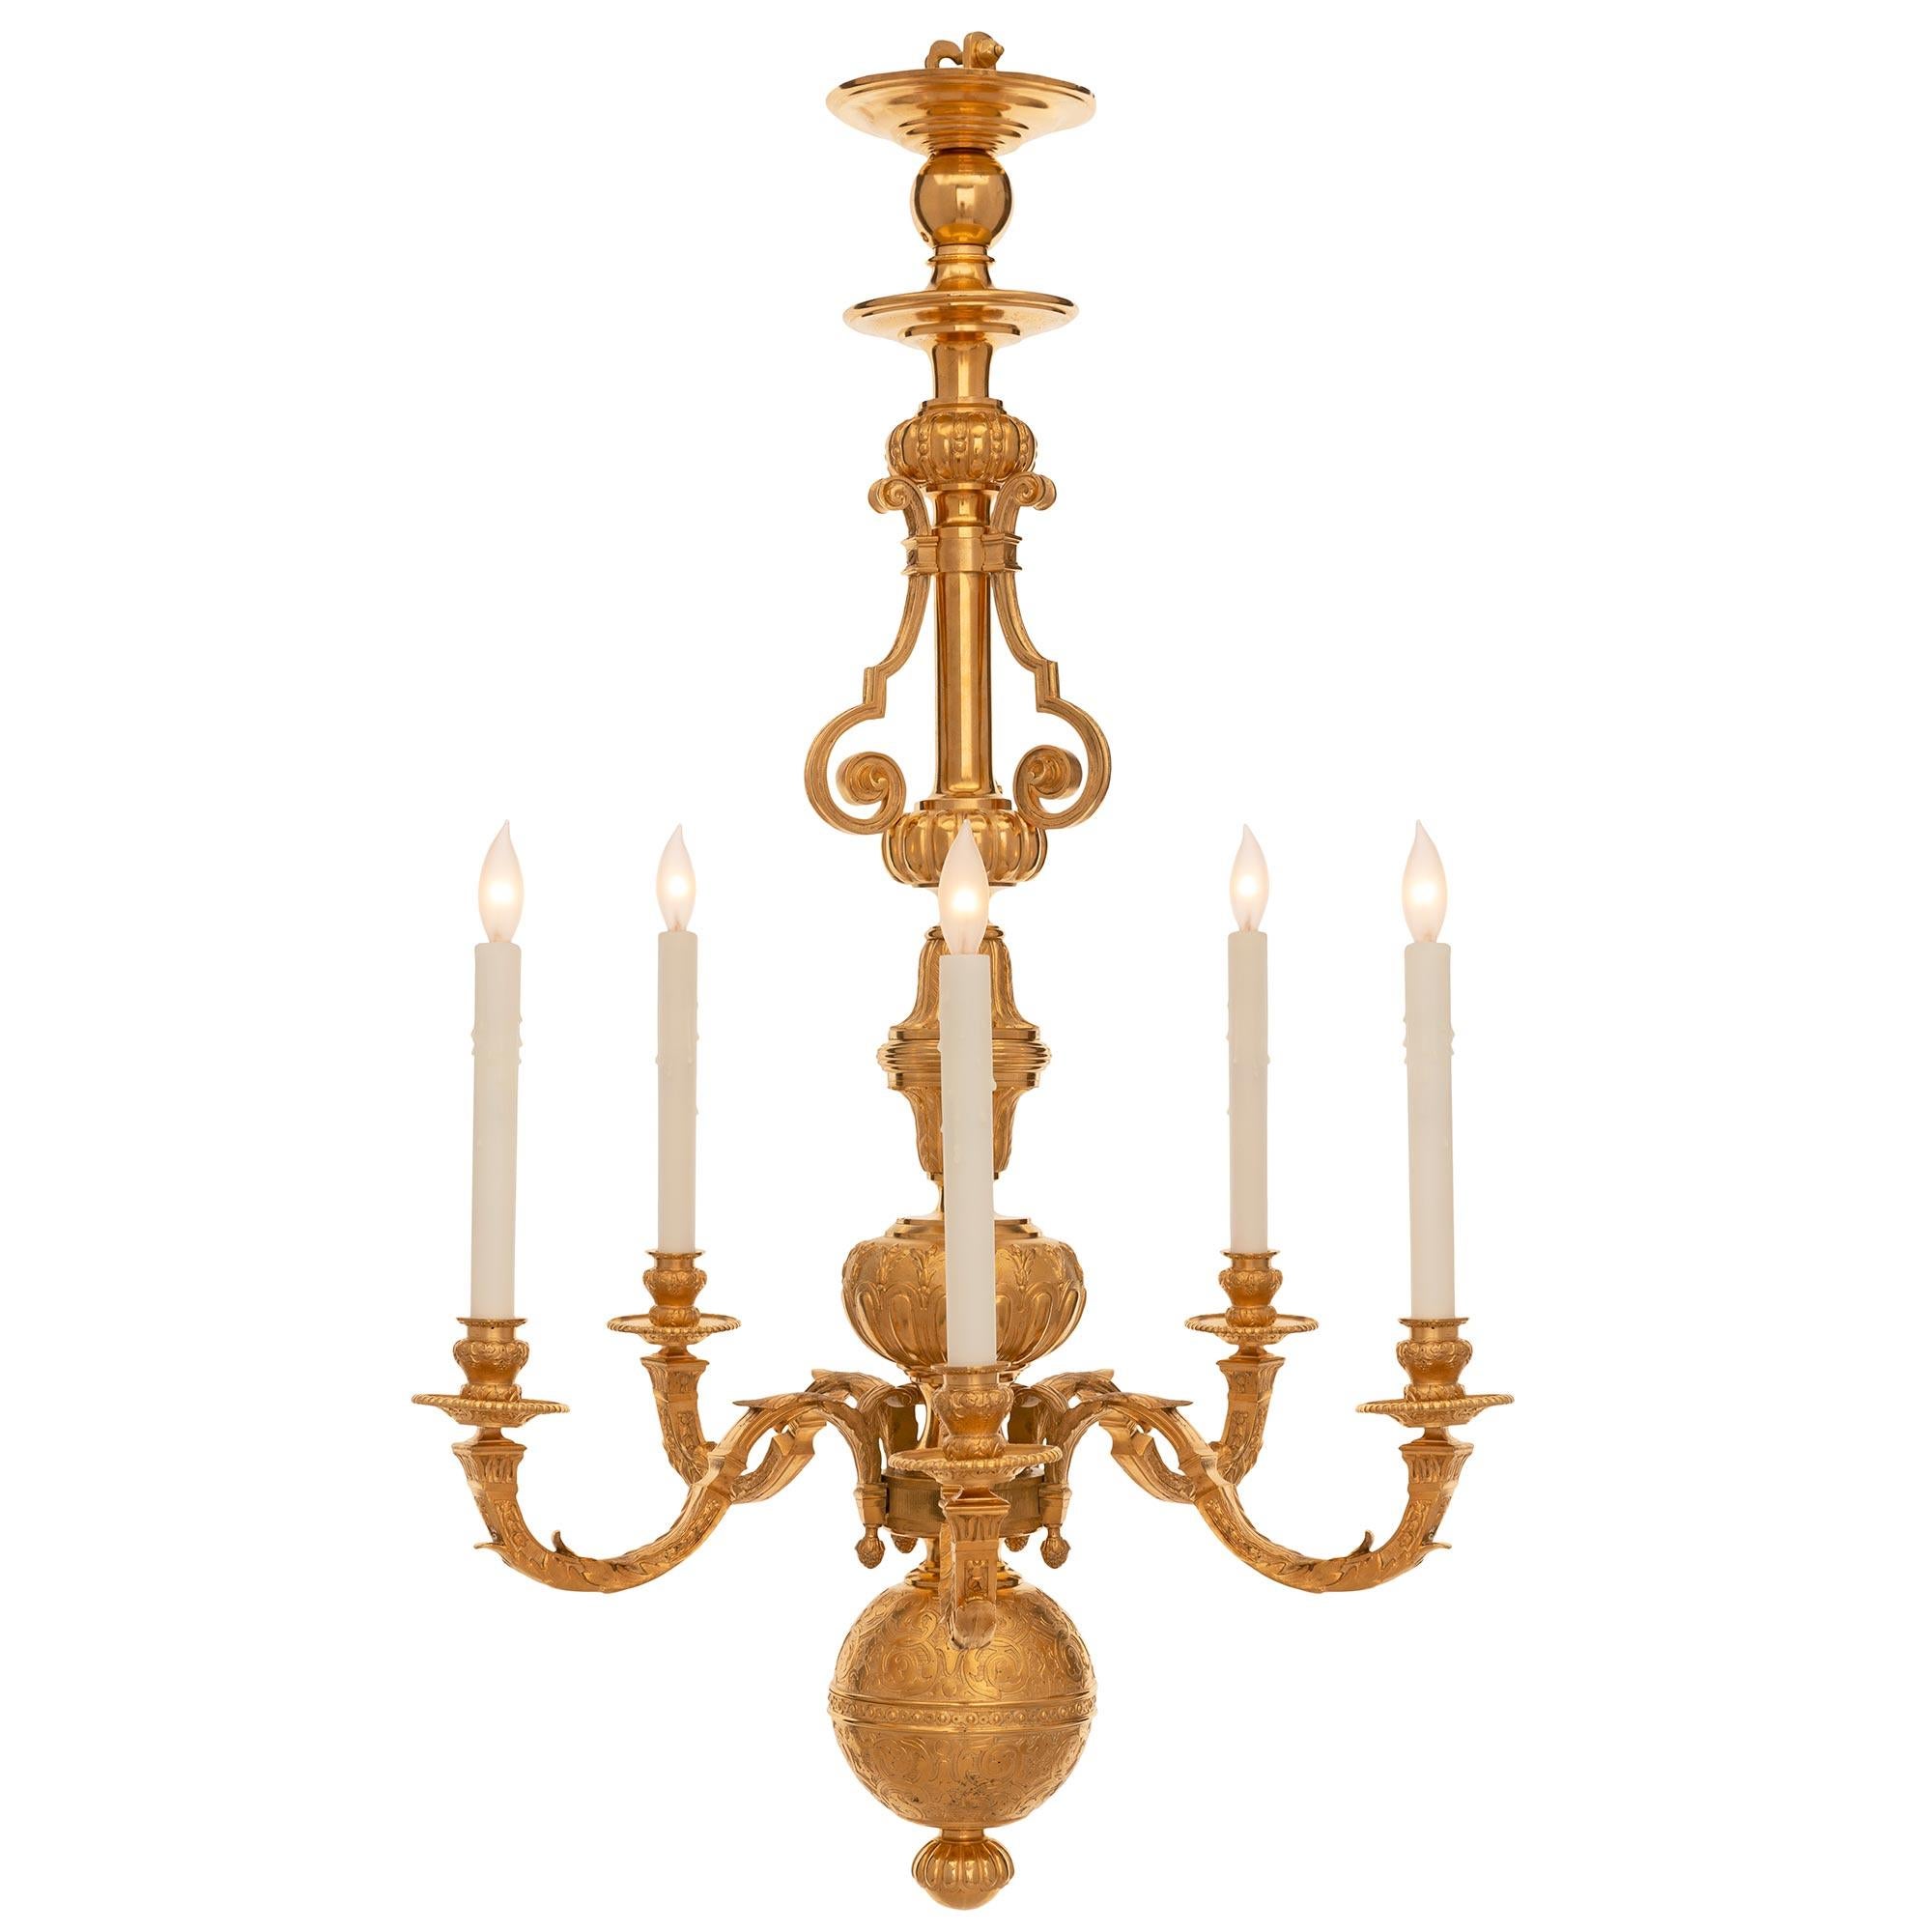 Un magnifique et très décoratif lustre hollandais de la fin du 19ème siècle en st. Louis XVI et bronze doré. Le lustre à cinq bras est centré par un fin fleuron inférieur cannelé et une réserve de boules frappantes avec des motifs feuillus détaillés